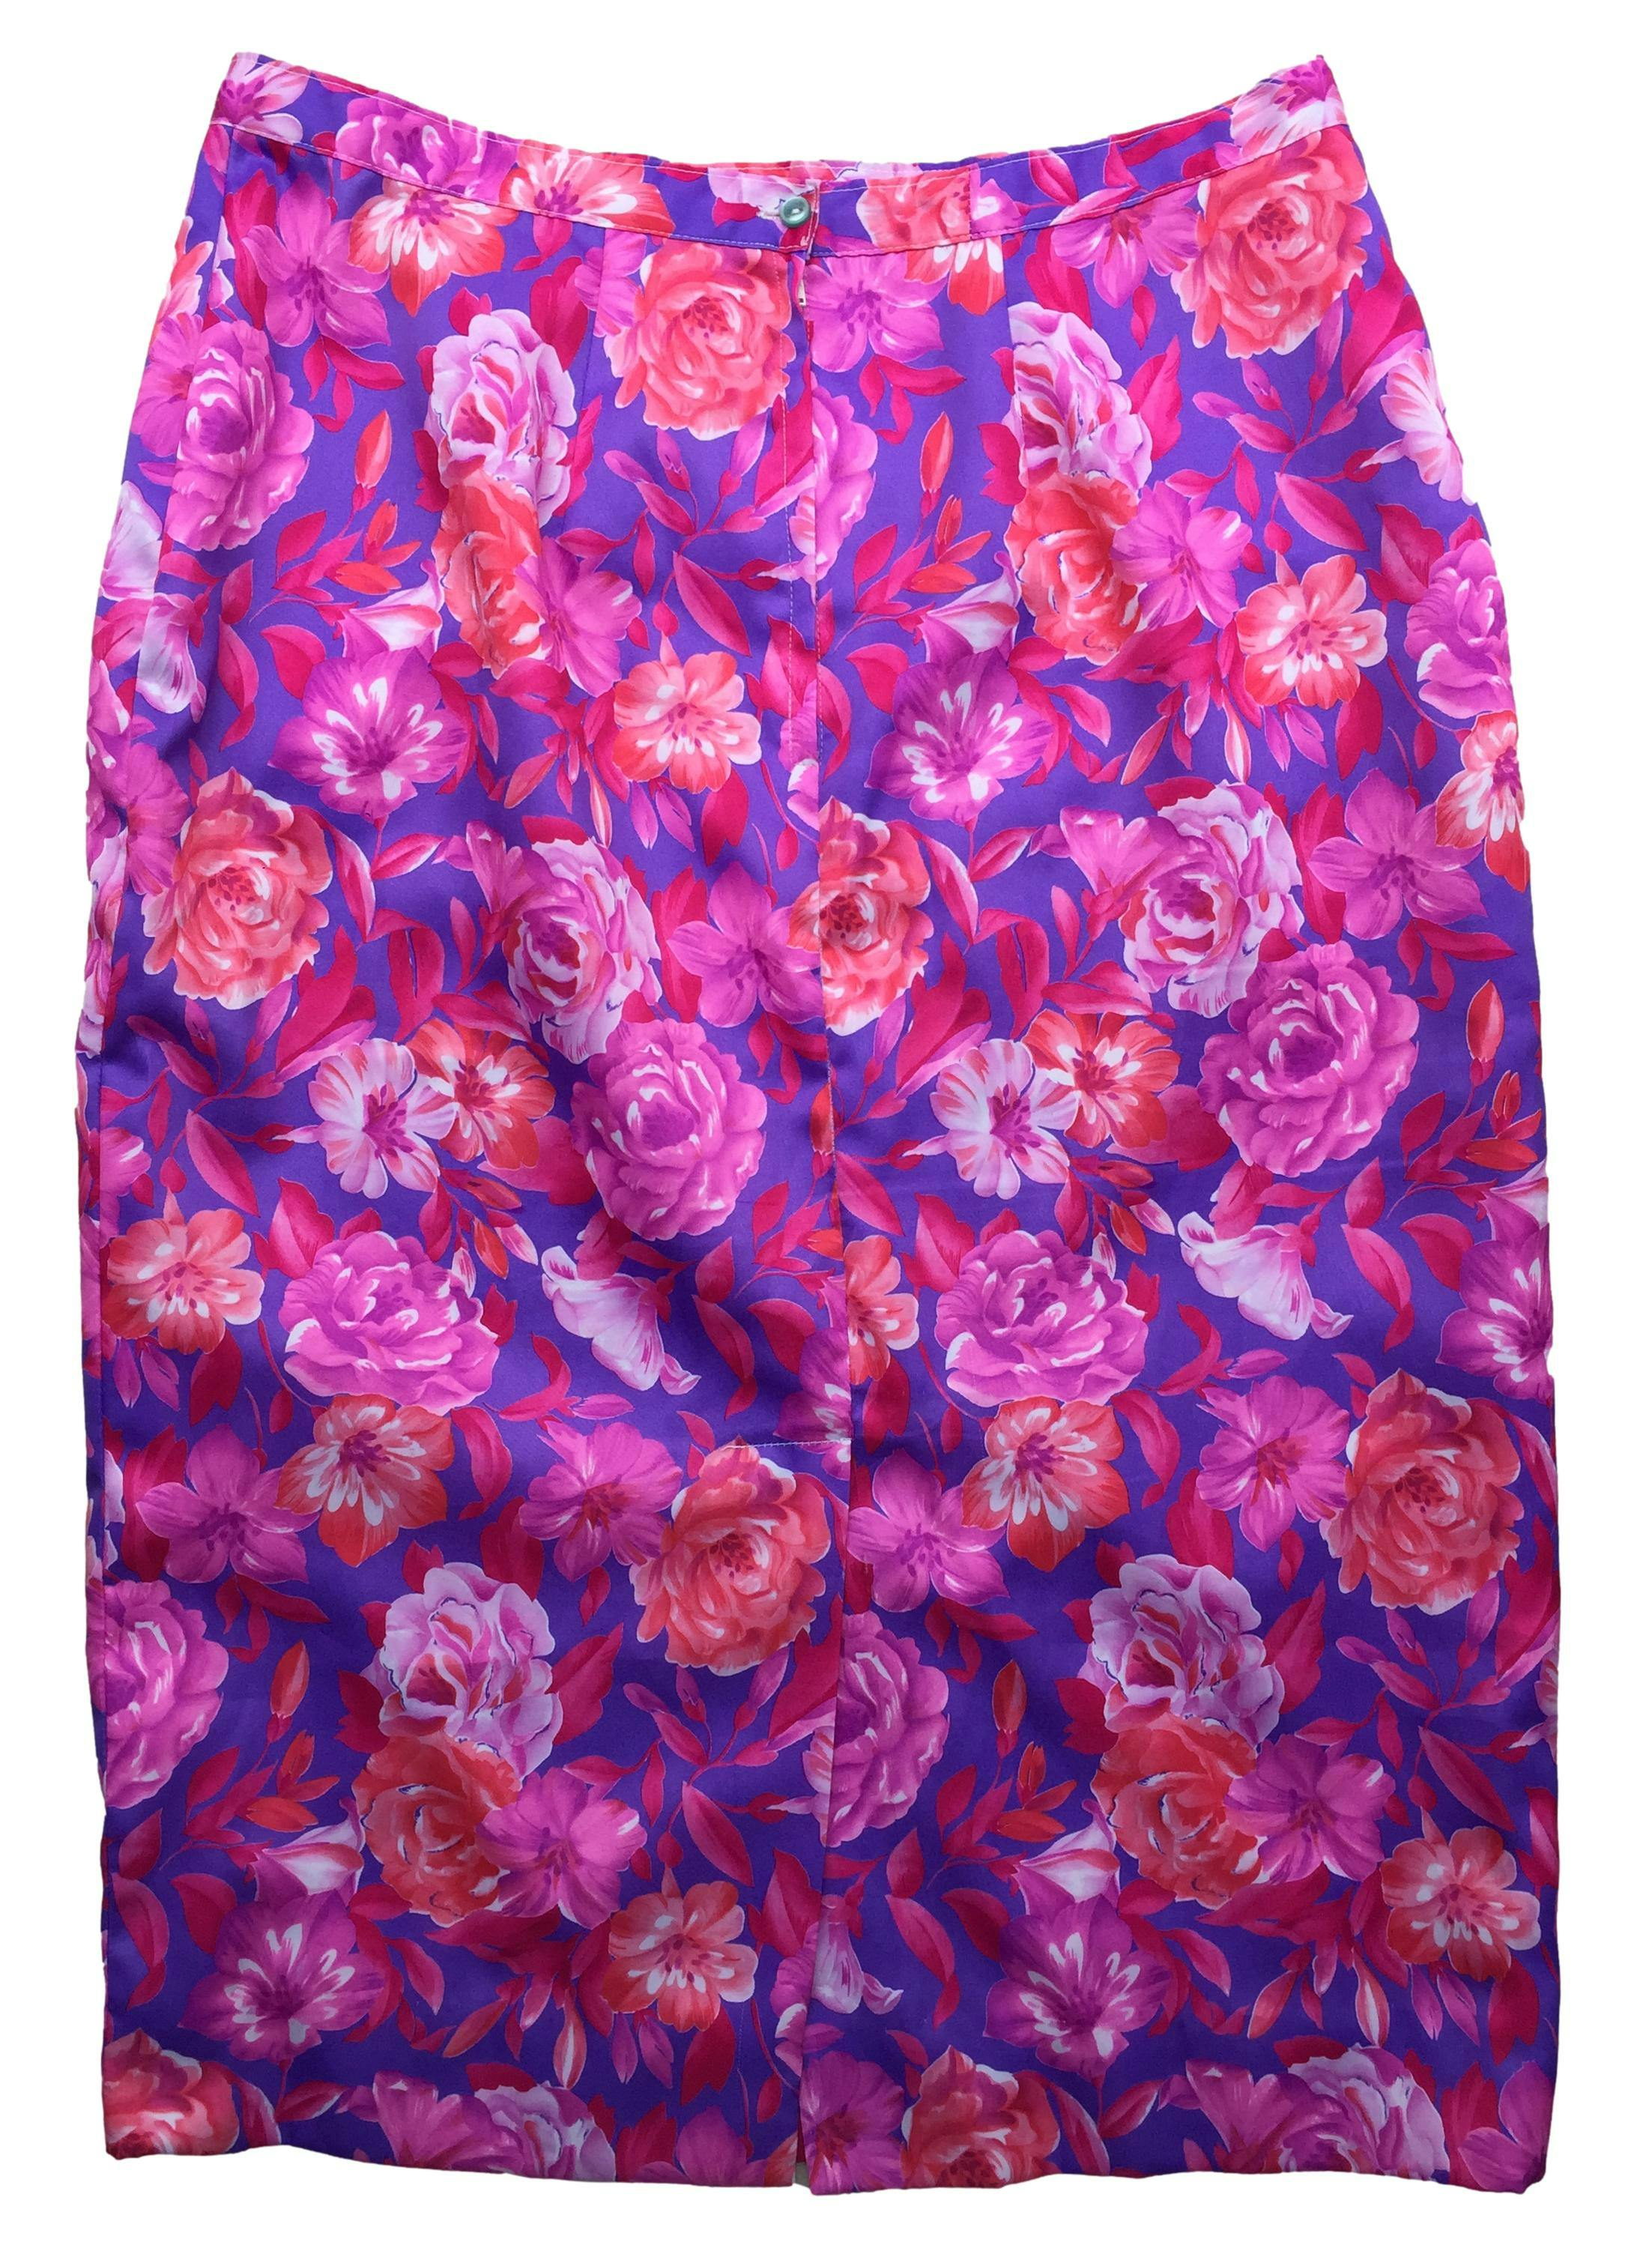 Falda con estampado floral en tonos rosa, morado, cierre y botón posterior. Cintura: 80cm, Largo: 73cm